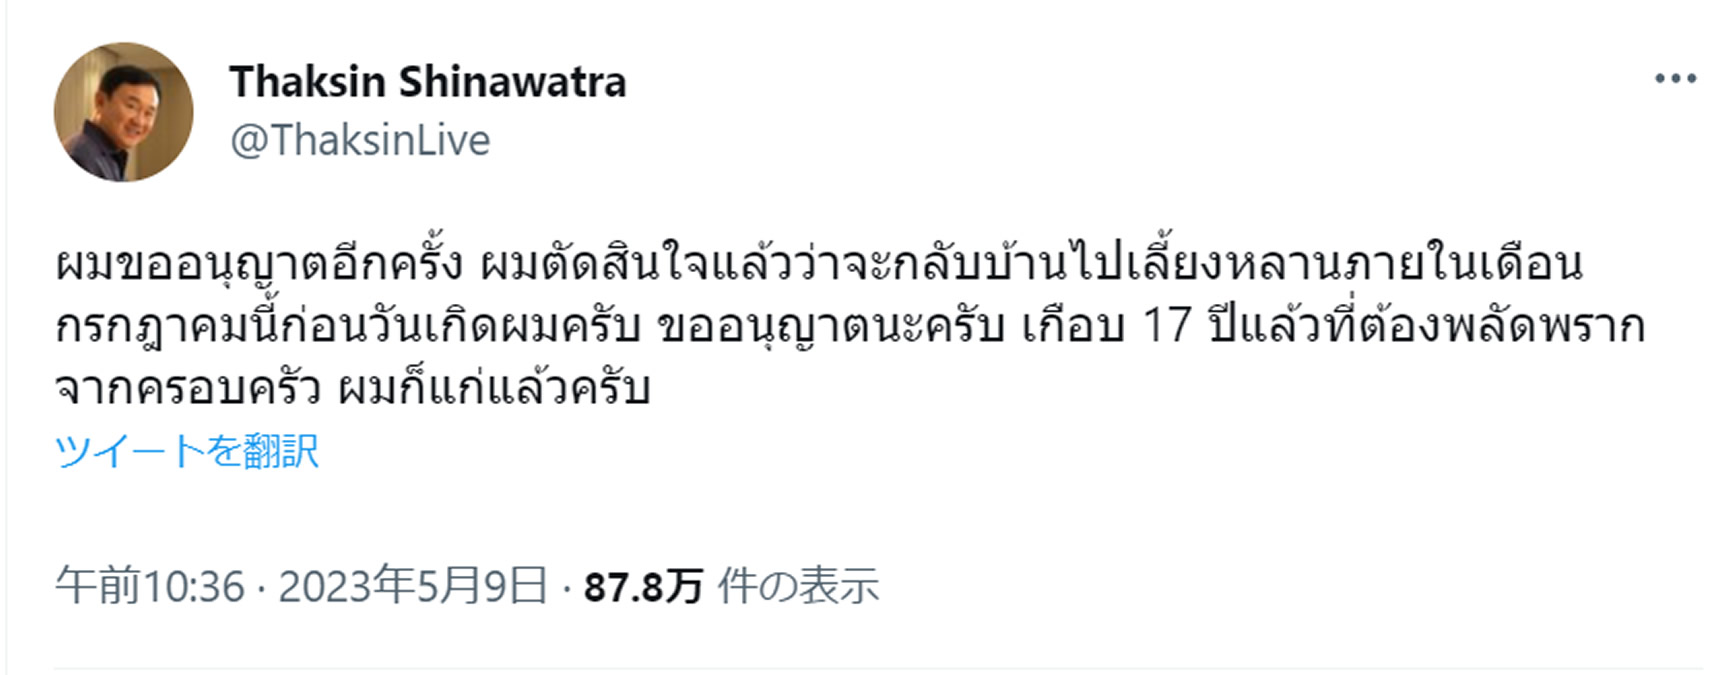 海外逃亡中のタクシン元首相「7月までにタイに帰国する」とTwitterで表明